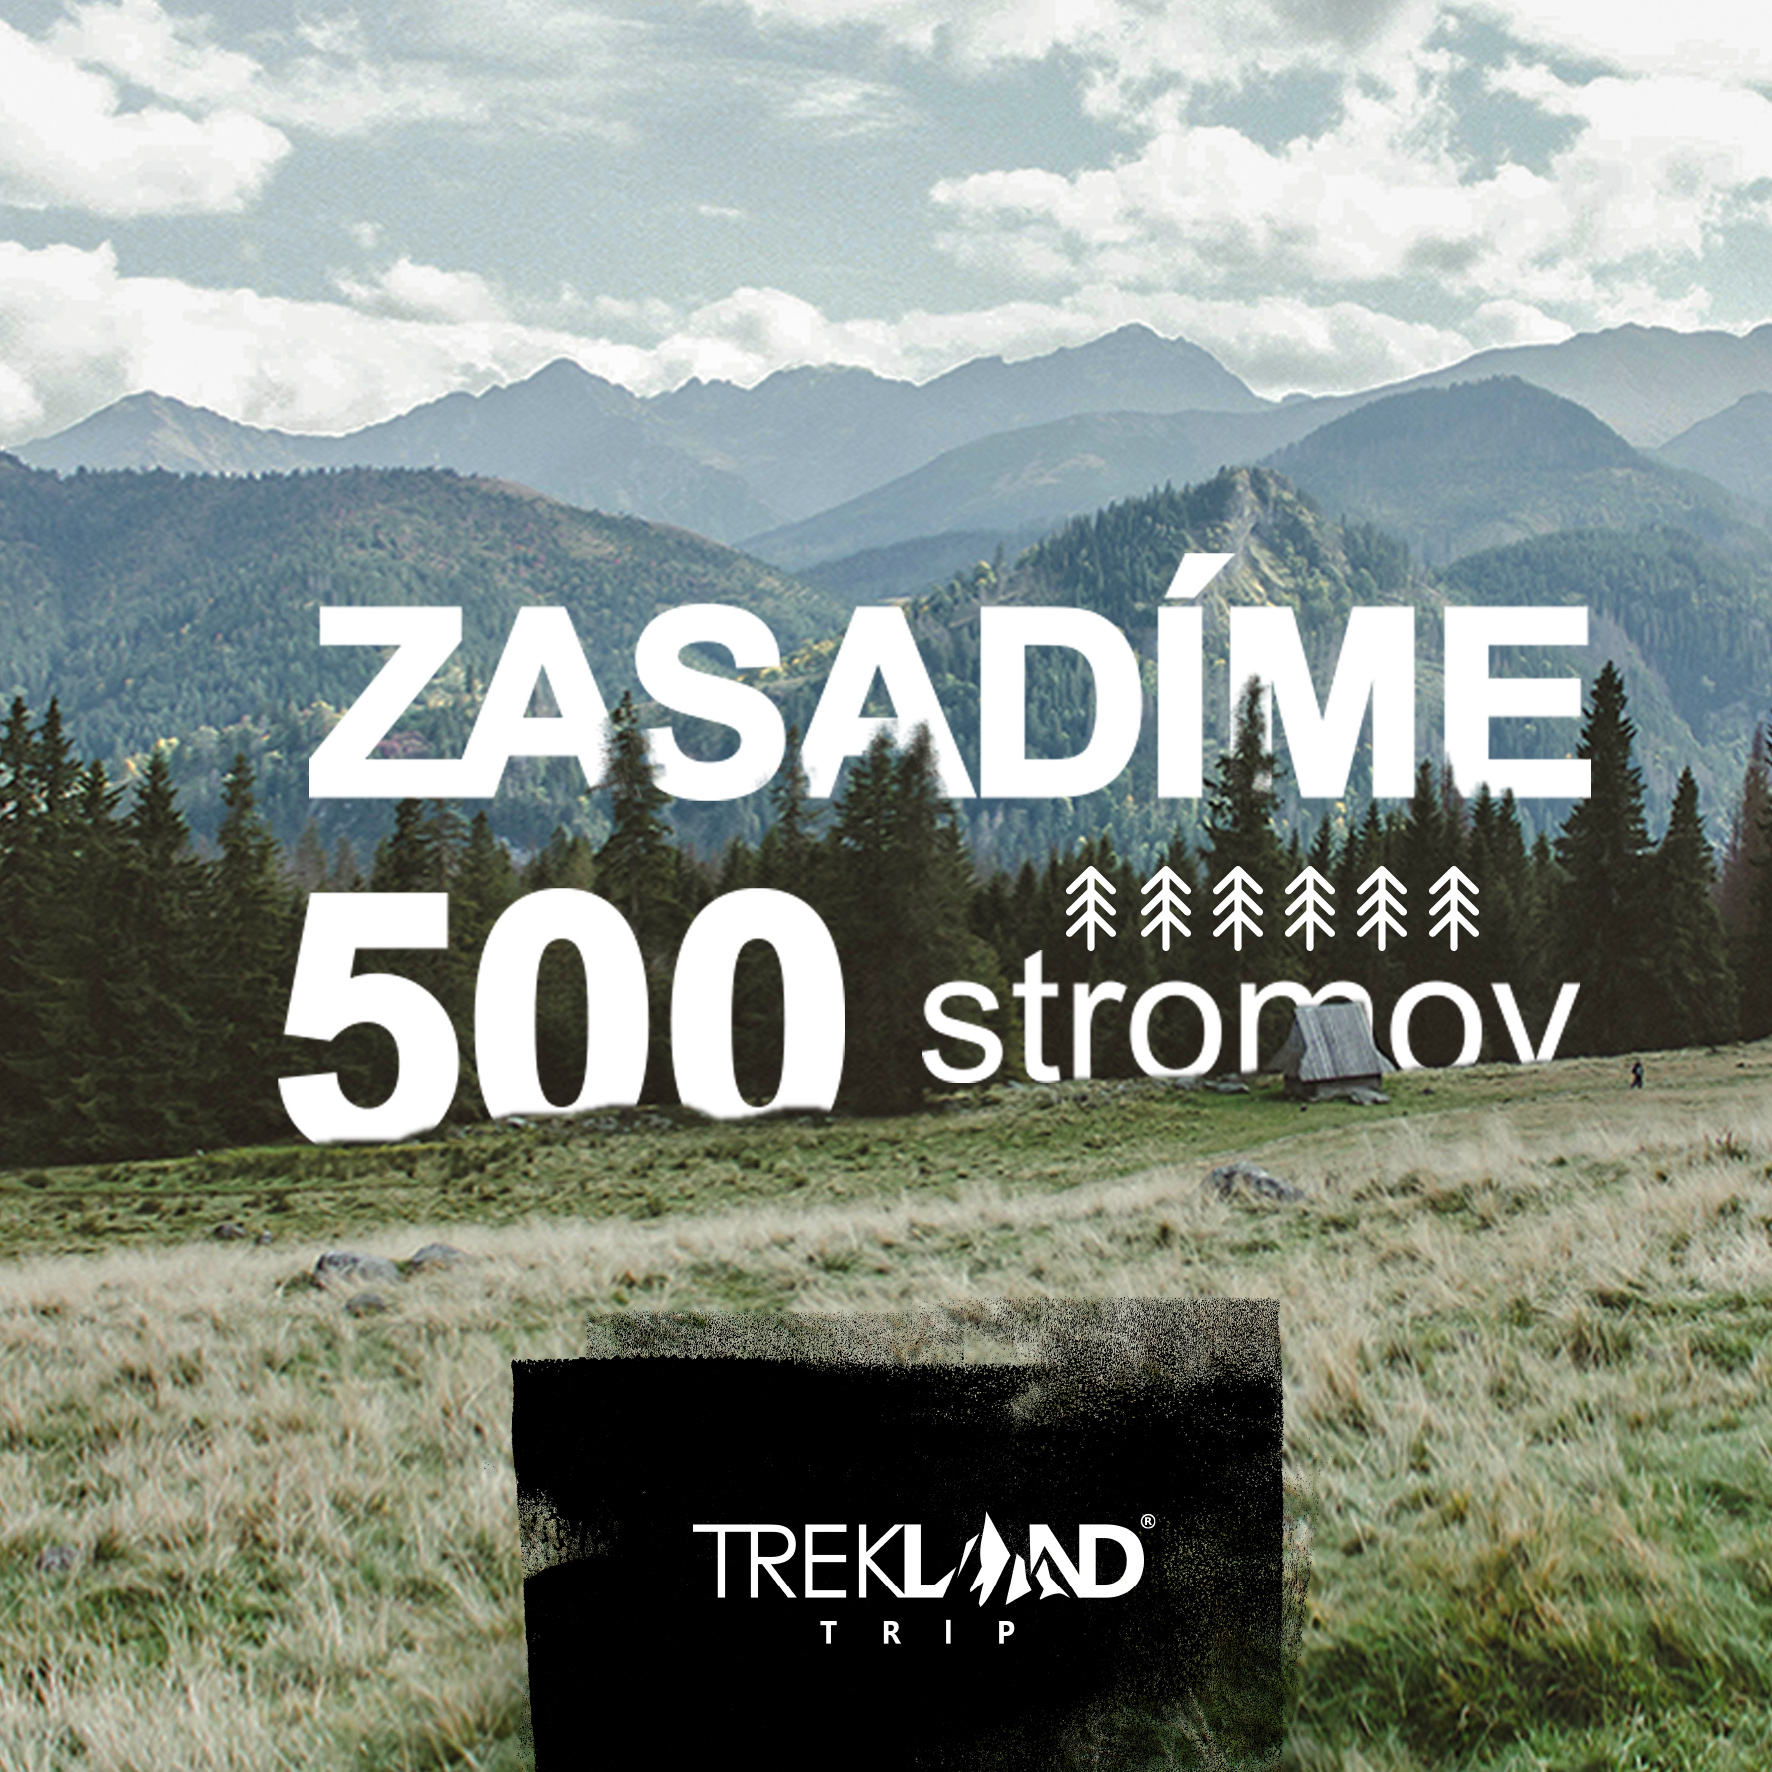 Trekland Trip - zasadíme 500 stromov v Tatrách